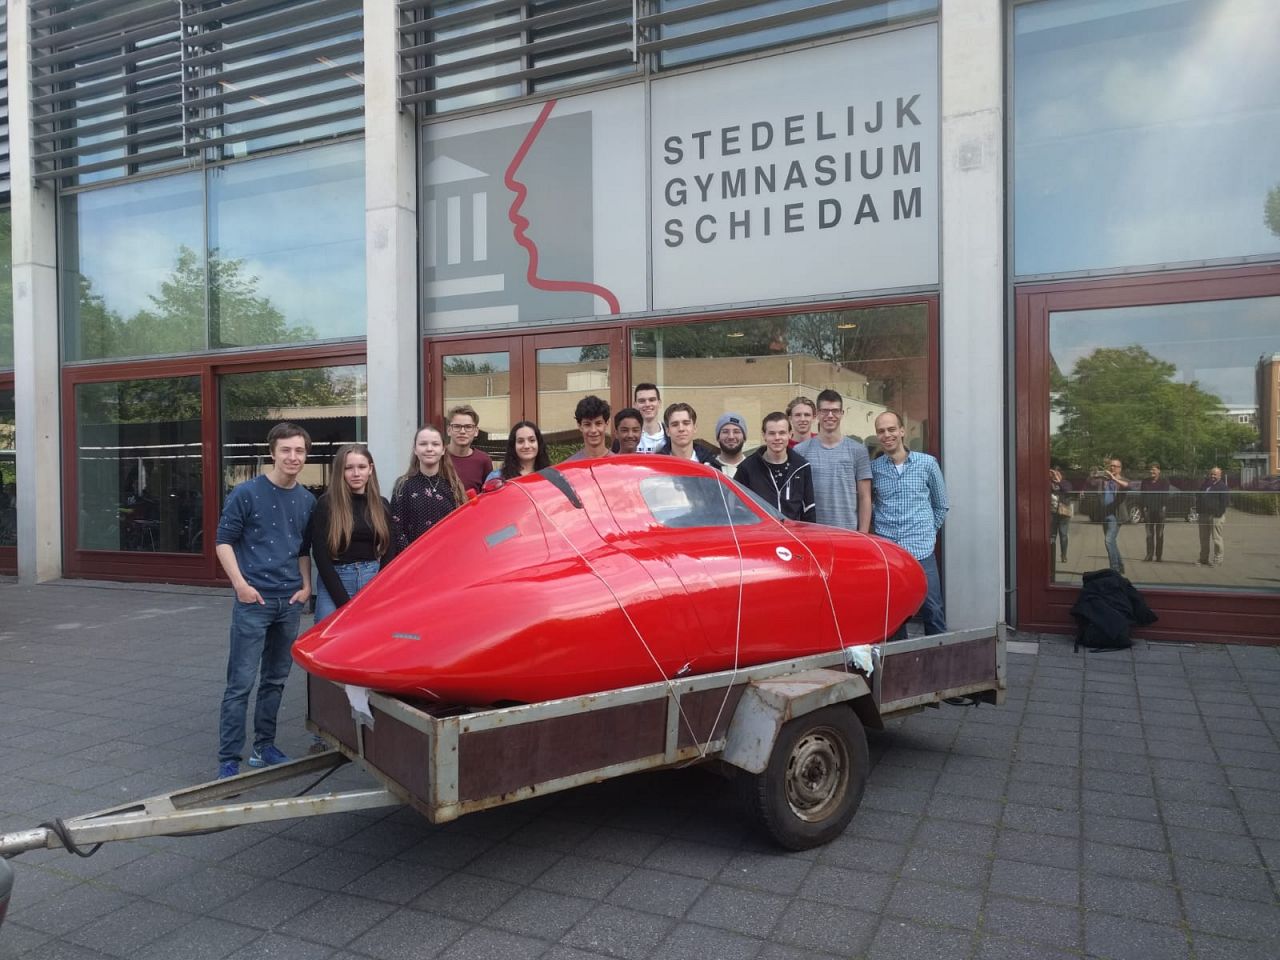 Leerlingen Stedelijk Gymnasium bouwen zelf auto